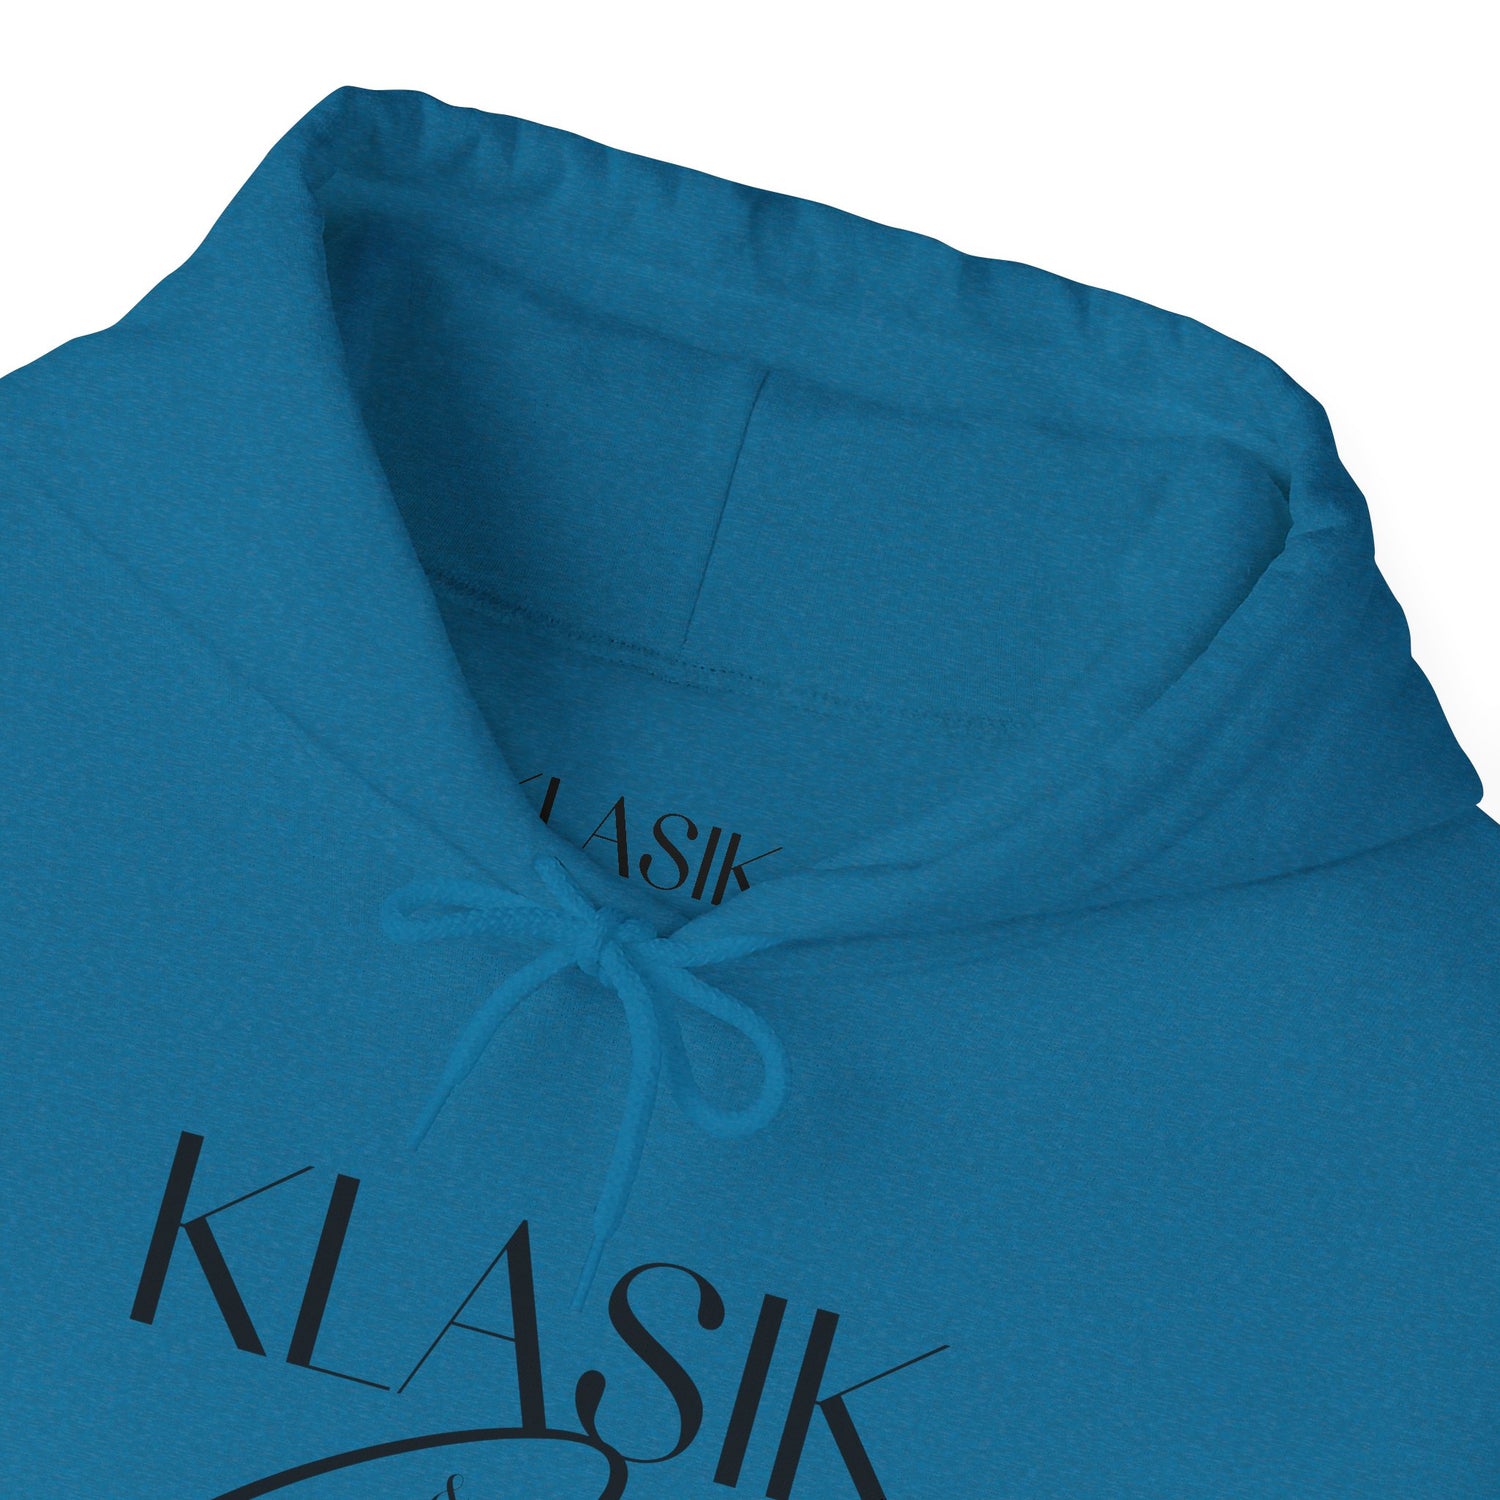 Klasik & Comfy - Hooded Sweatshirt